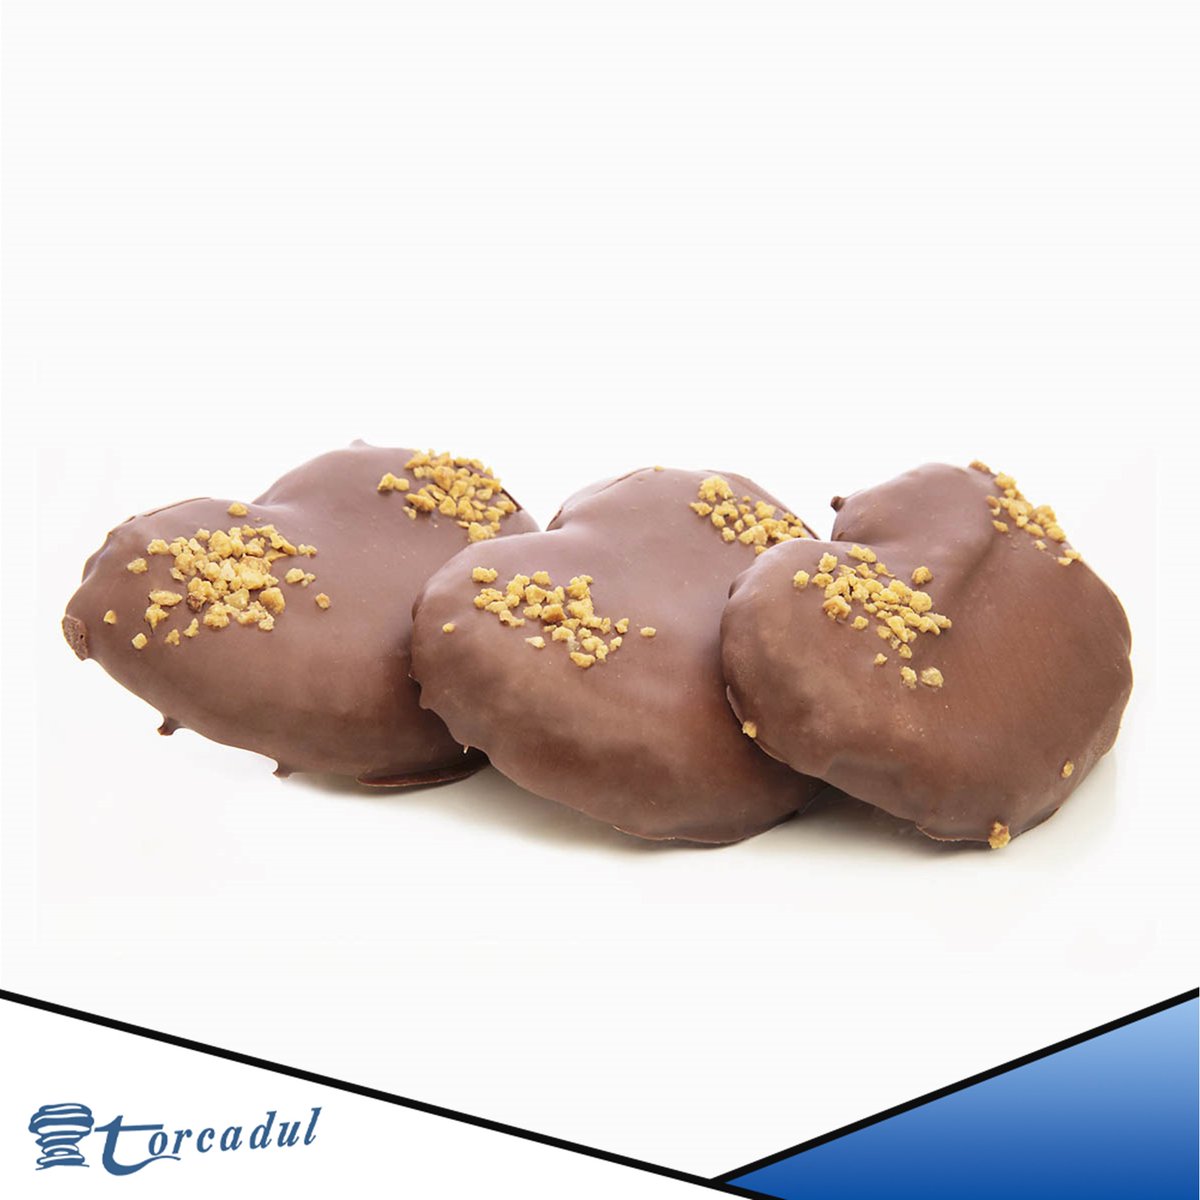 ¡Déjate envolver por la exquisitez de nuestras palmeras de chocolate sabor Ferrero! 🍫😍

#PalmerasDeChocolate #SaborFerrero #DeliciaIrresistible #DulcesIrresistibles #AntojoDulce #TiendaDeDulces #SaborExquisito #PlacerGastronómico #Antequera